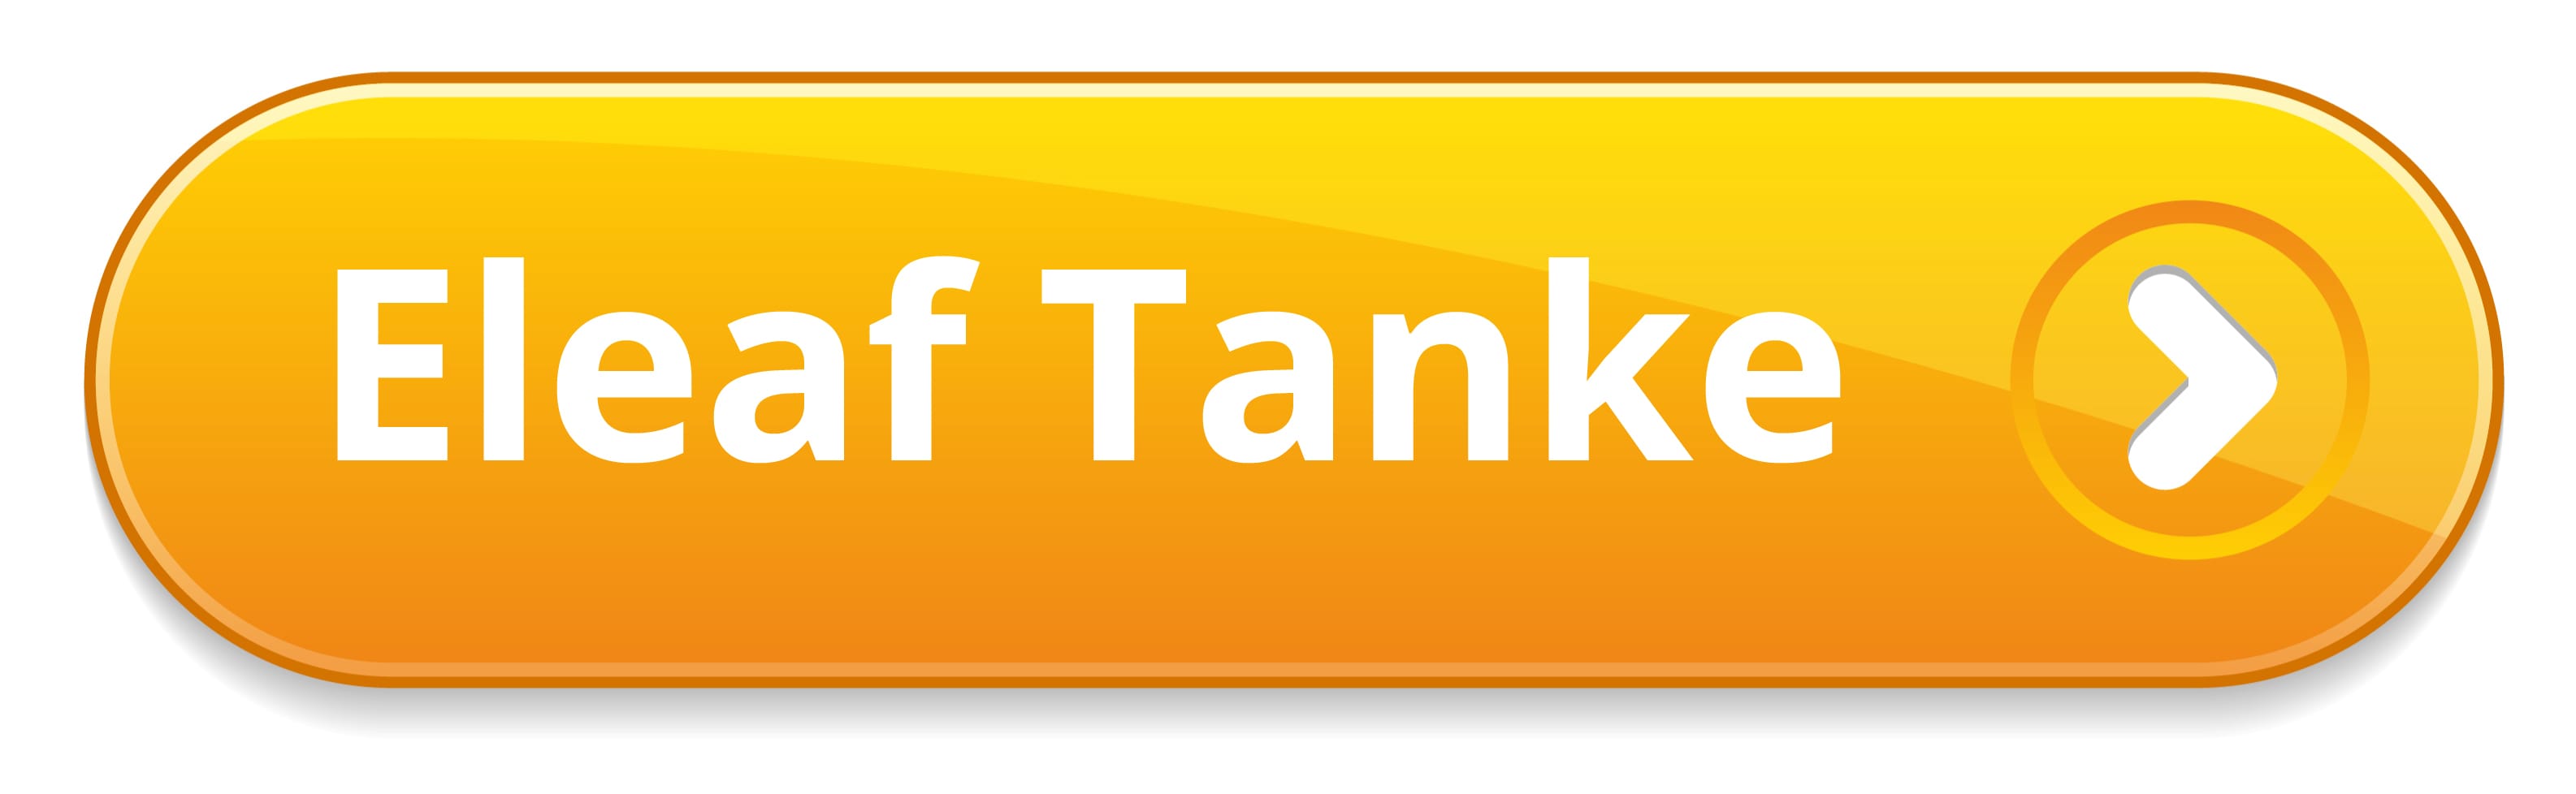 eleaf Tank